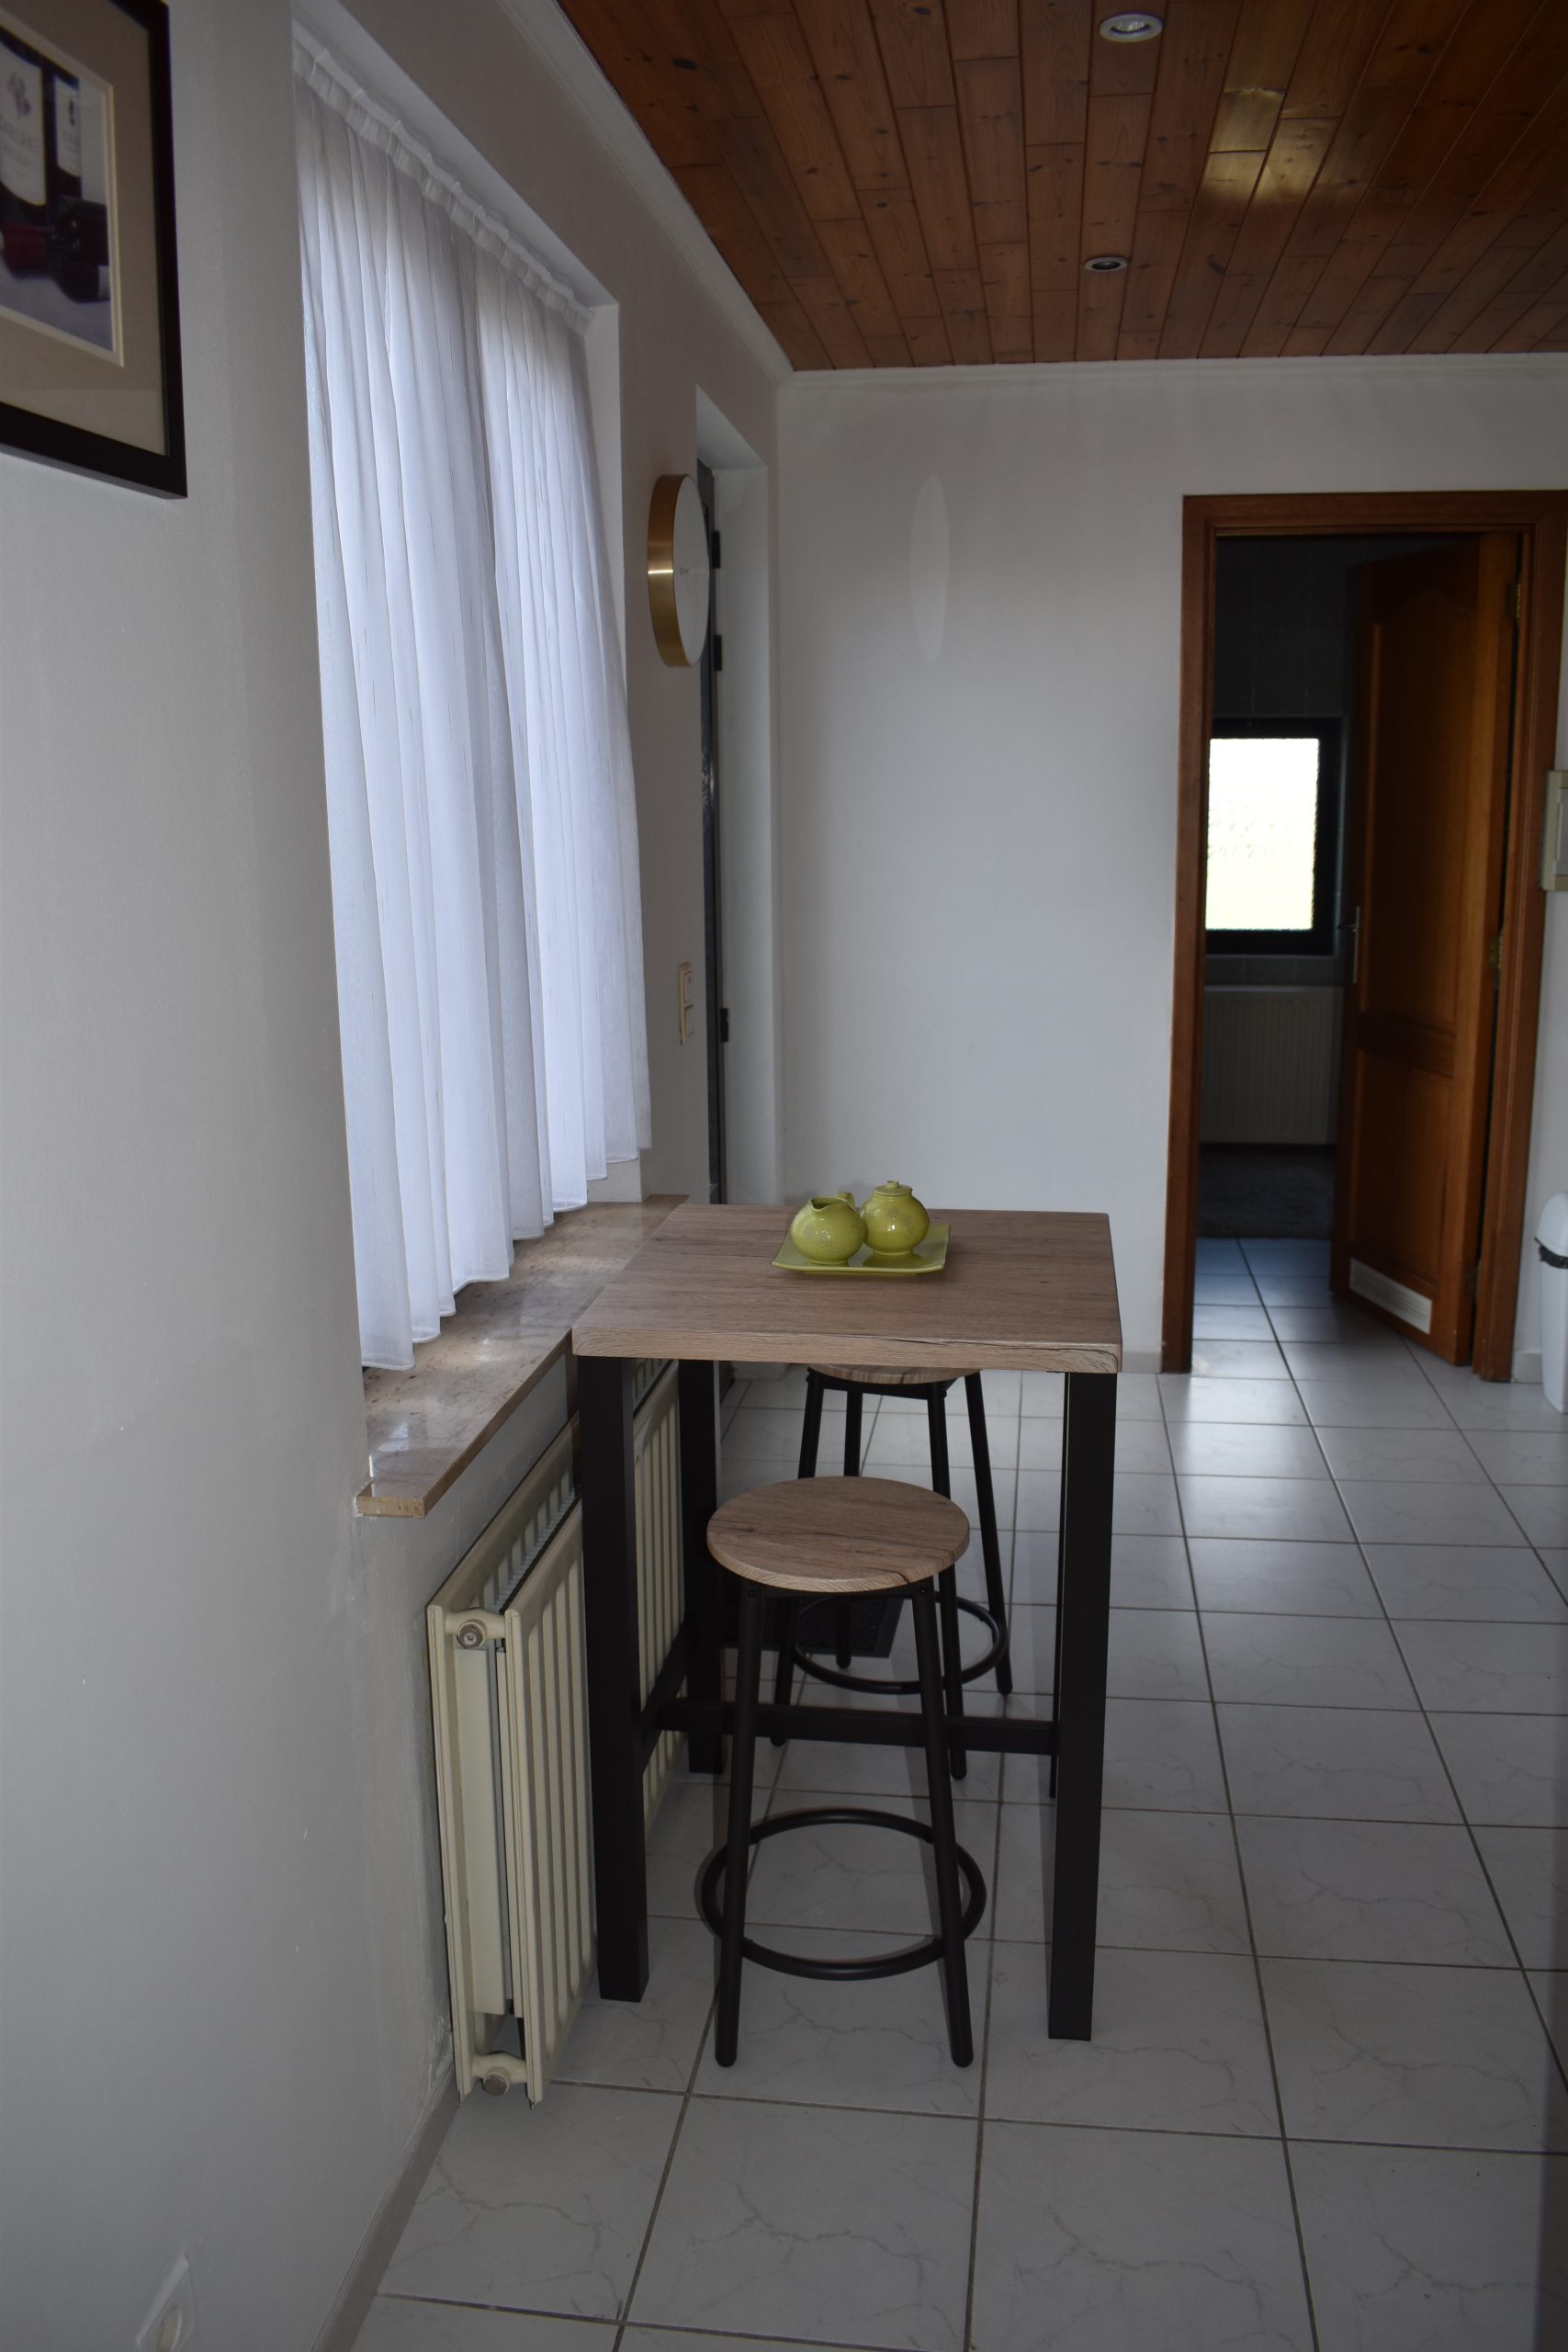 4-bedroom for rent in Antwerp - kitchen